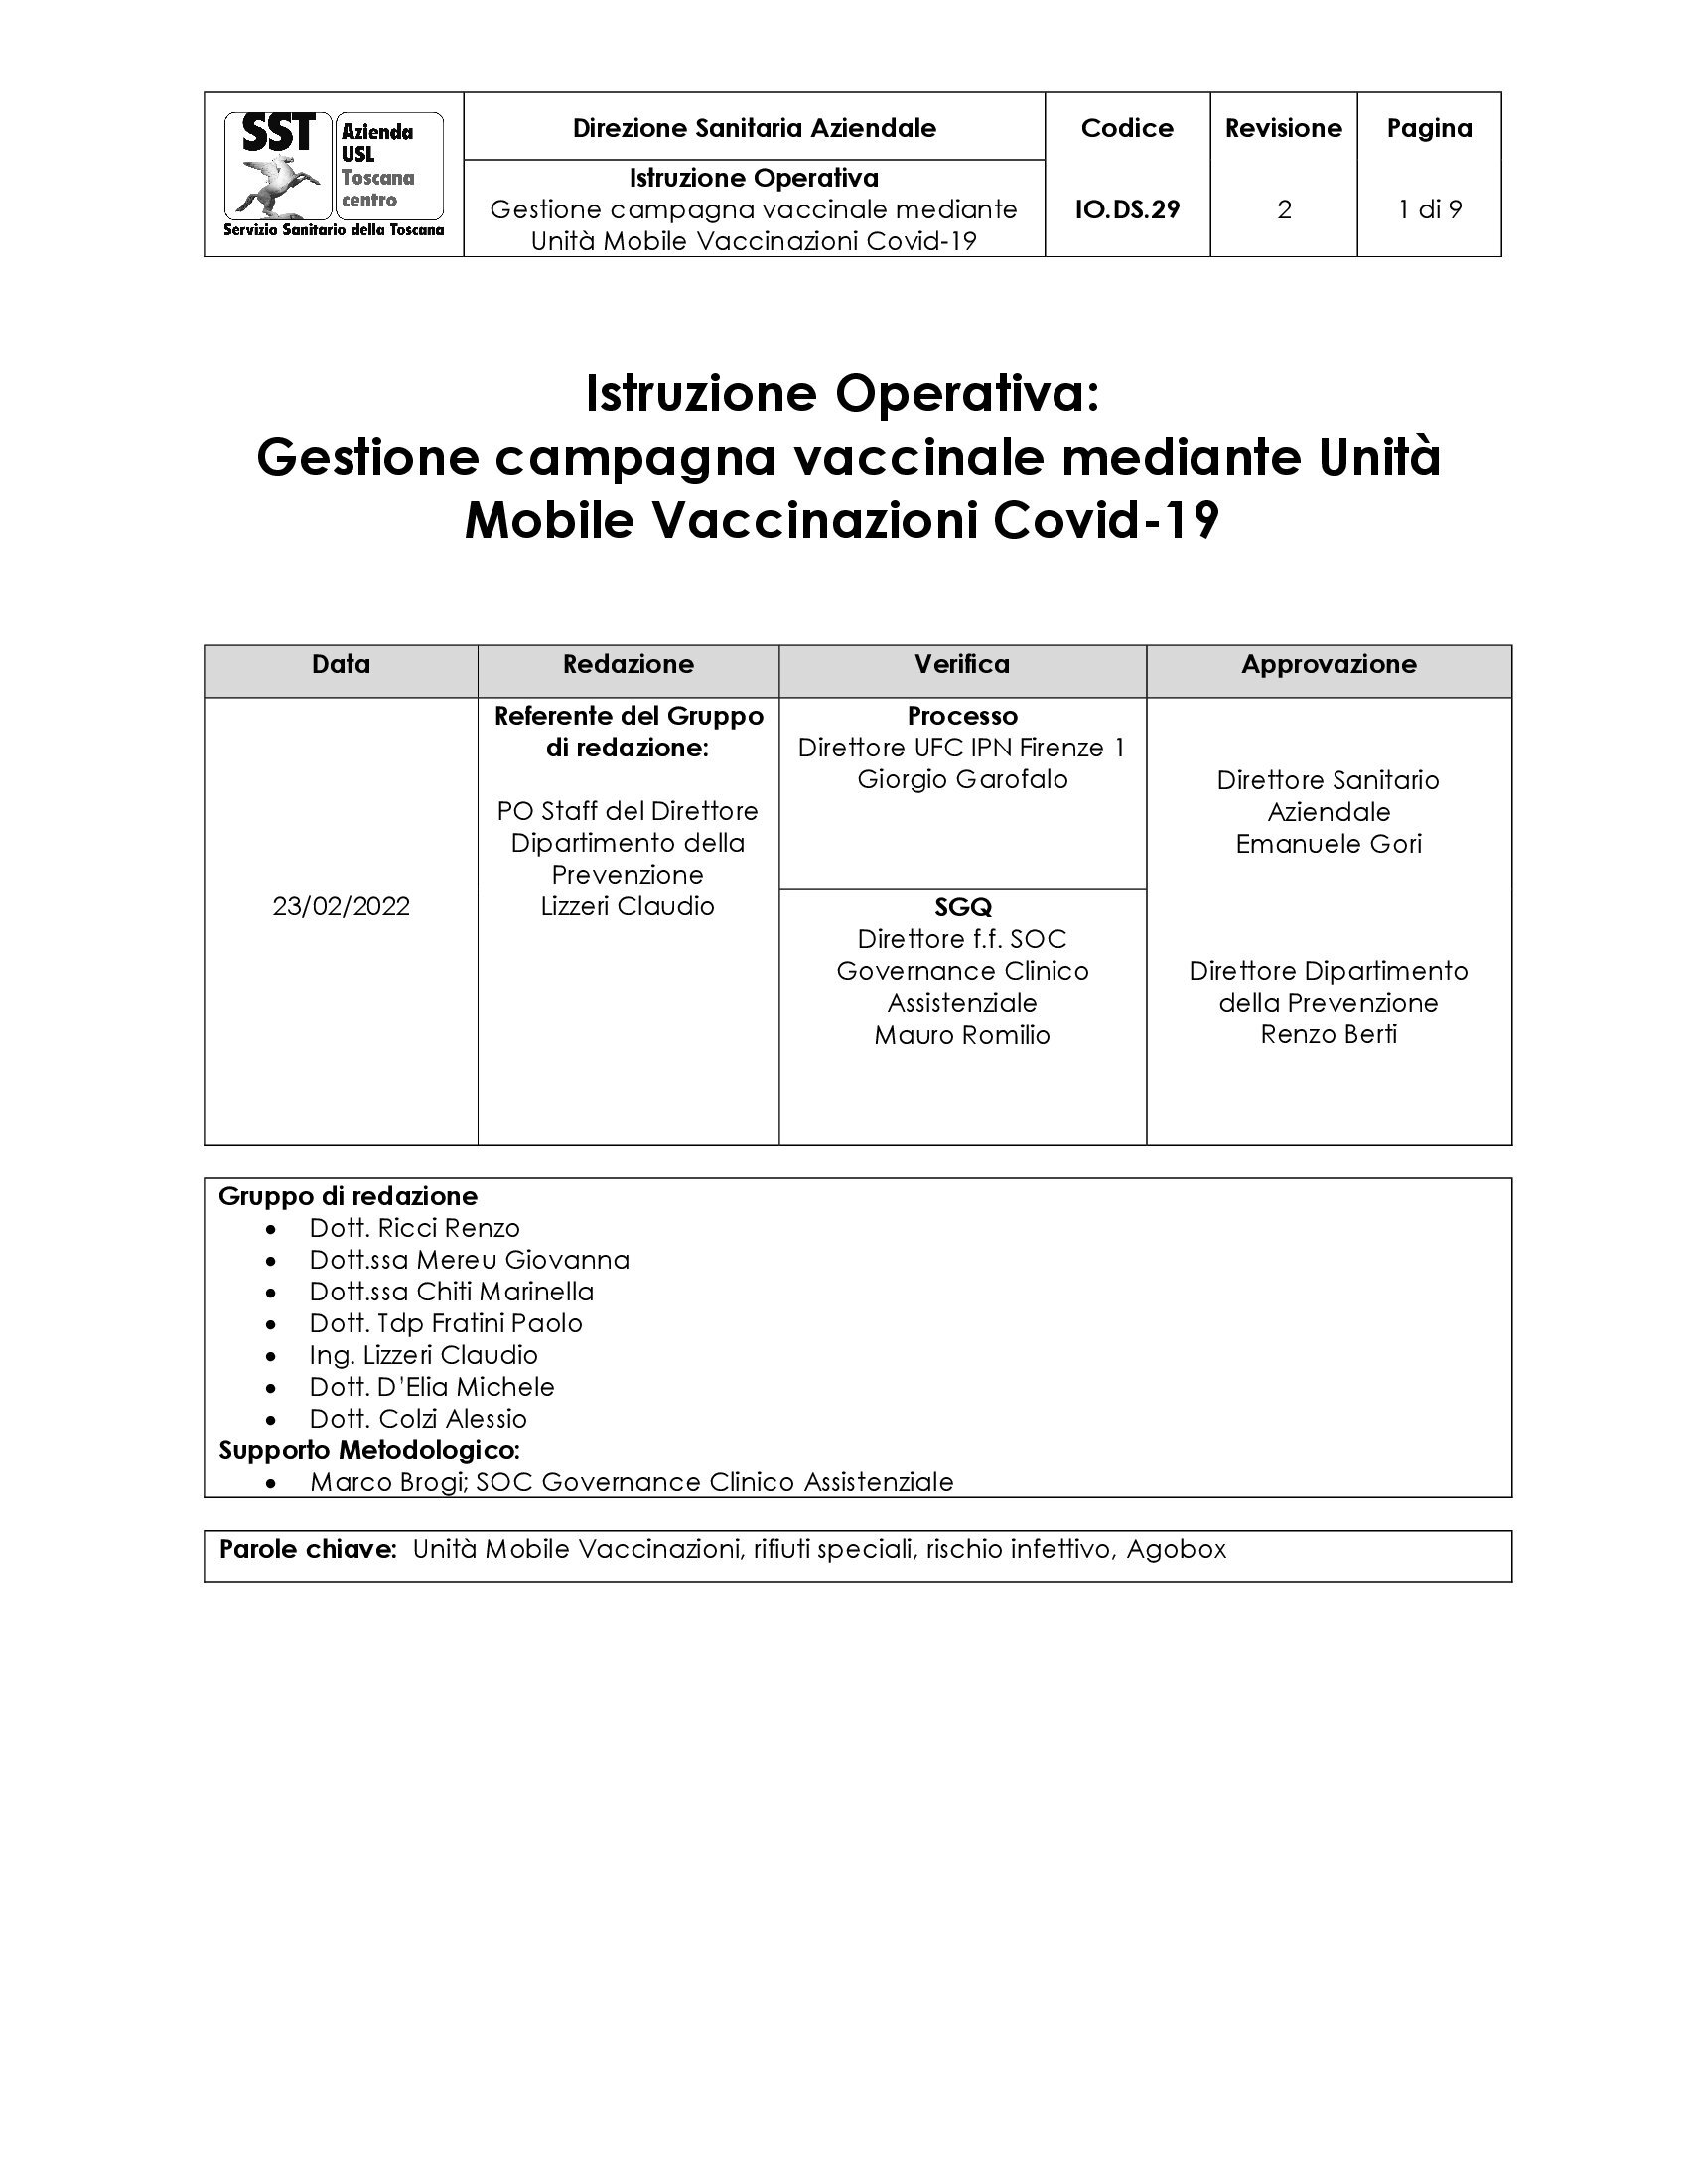 IO.DS.29 rev. 2 Gestione campagna vaccinale mediante Unità Mobile Vaccinazioni Covid-19